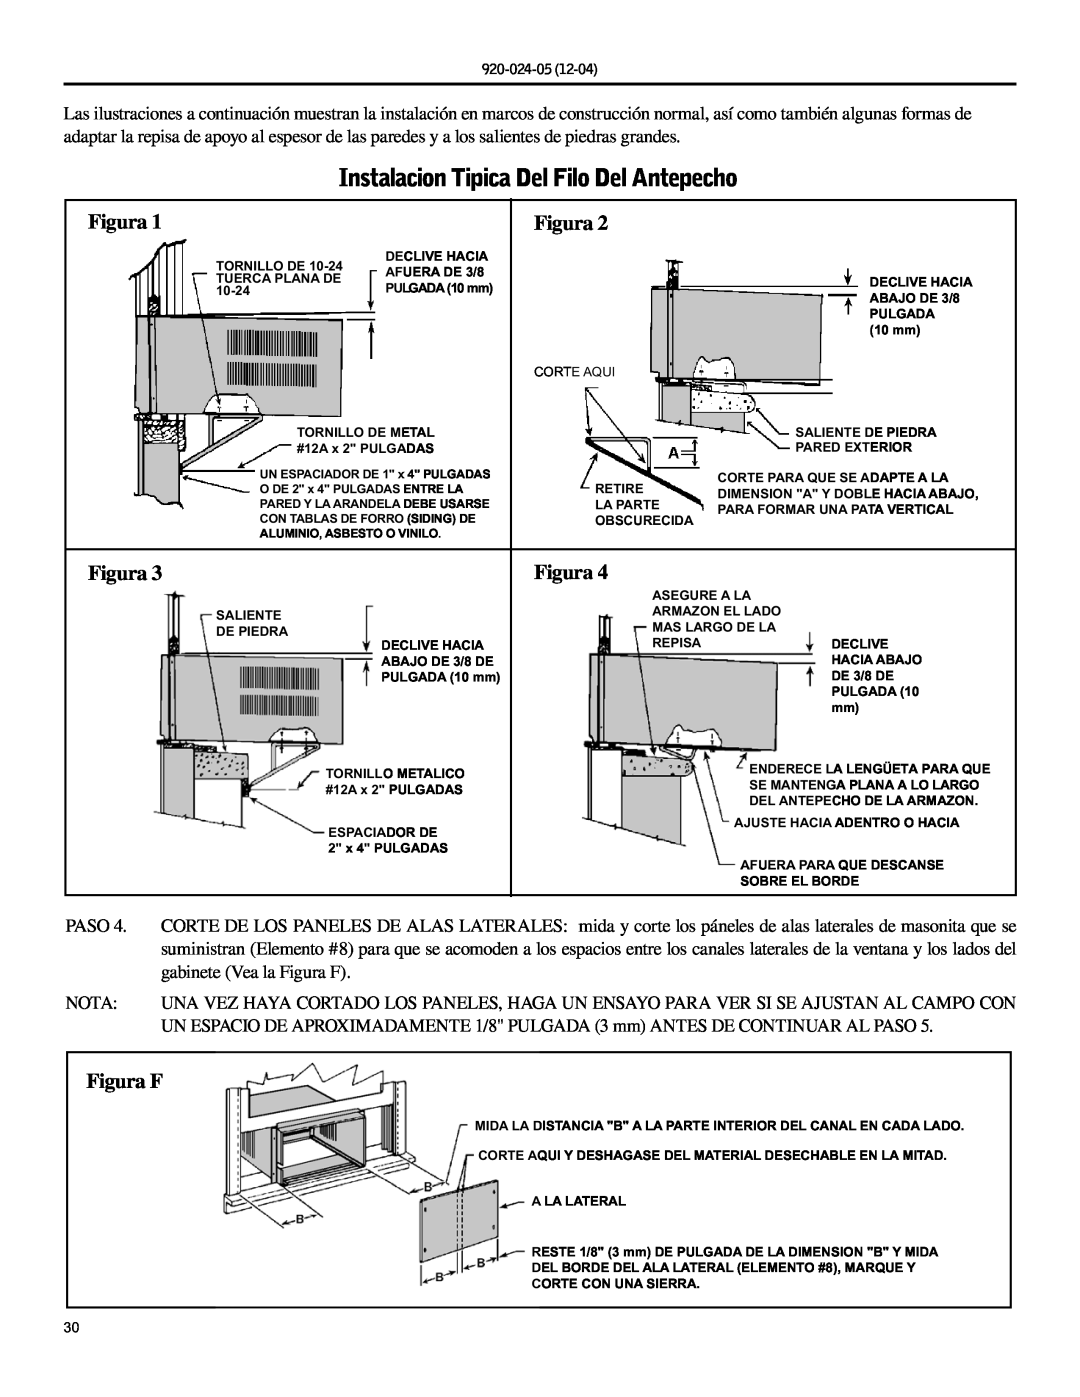 Friedrich SH15, SH20 operation manual Instalacion Tipica Del Filo Del Antepecho, Figura F 